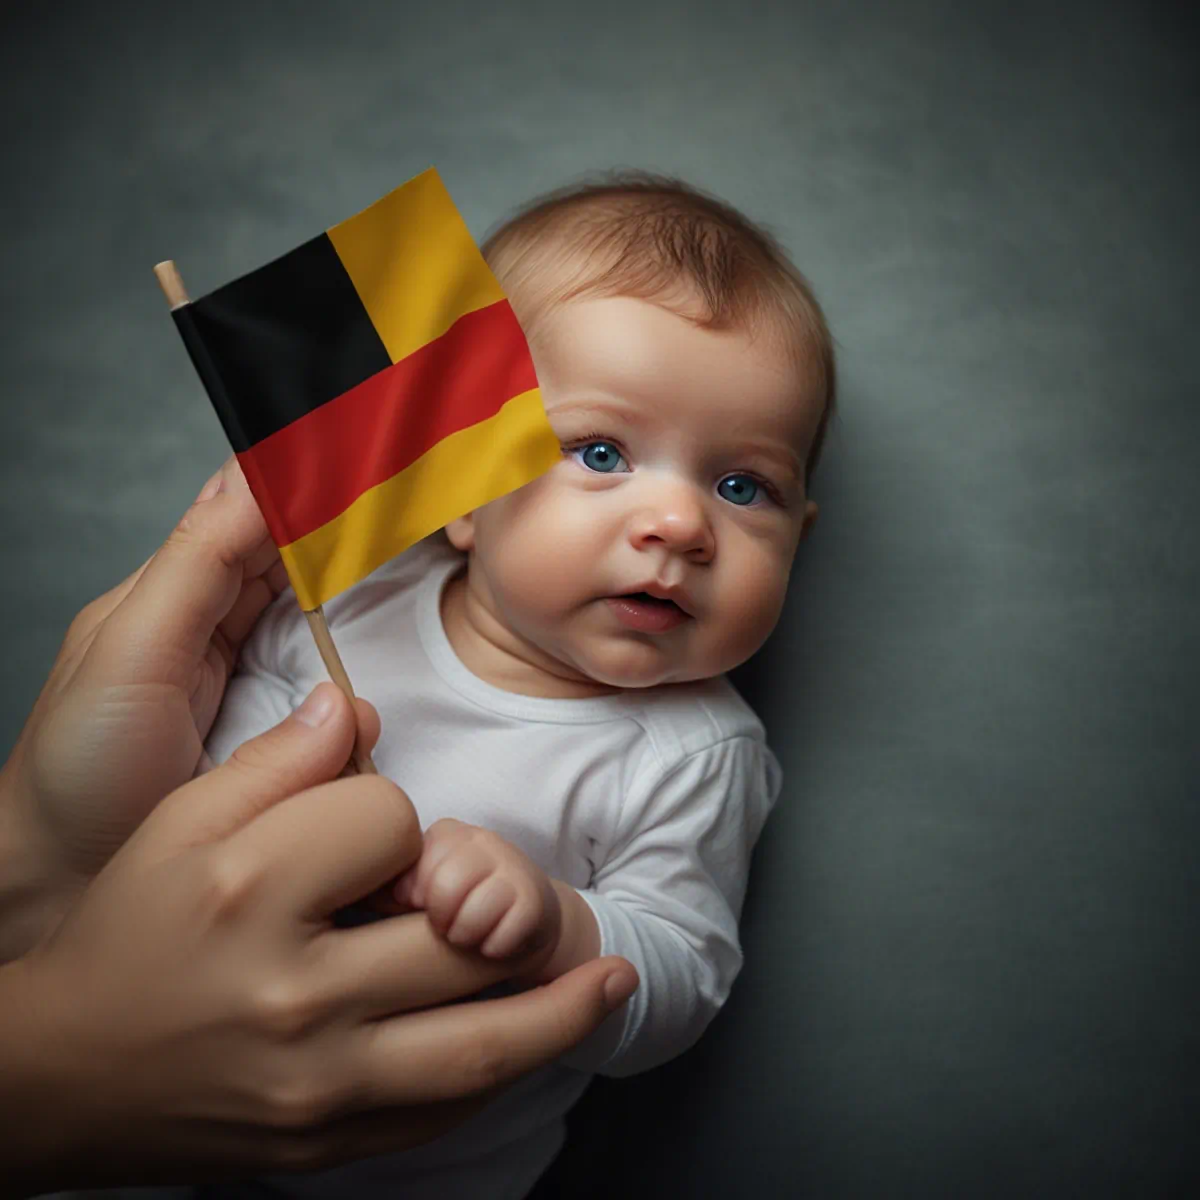 مزایای اخذ اقامت آلمان از طریق تولد